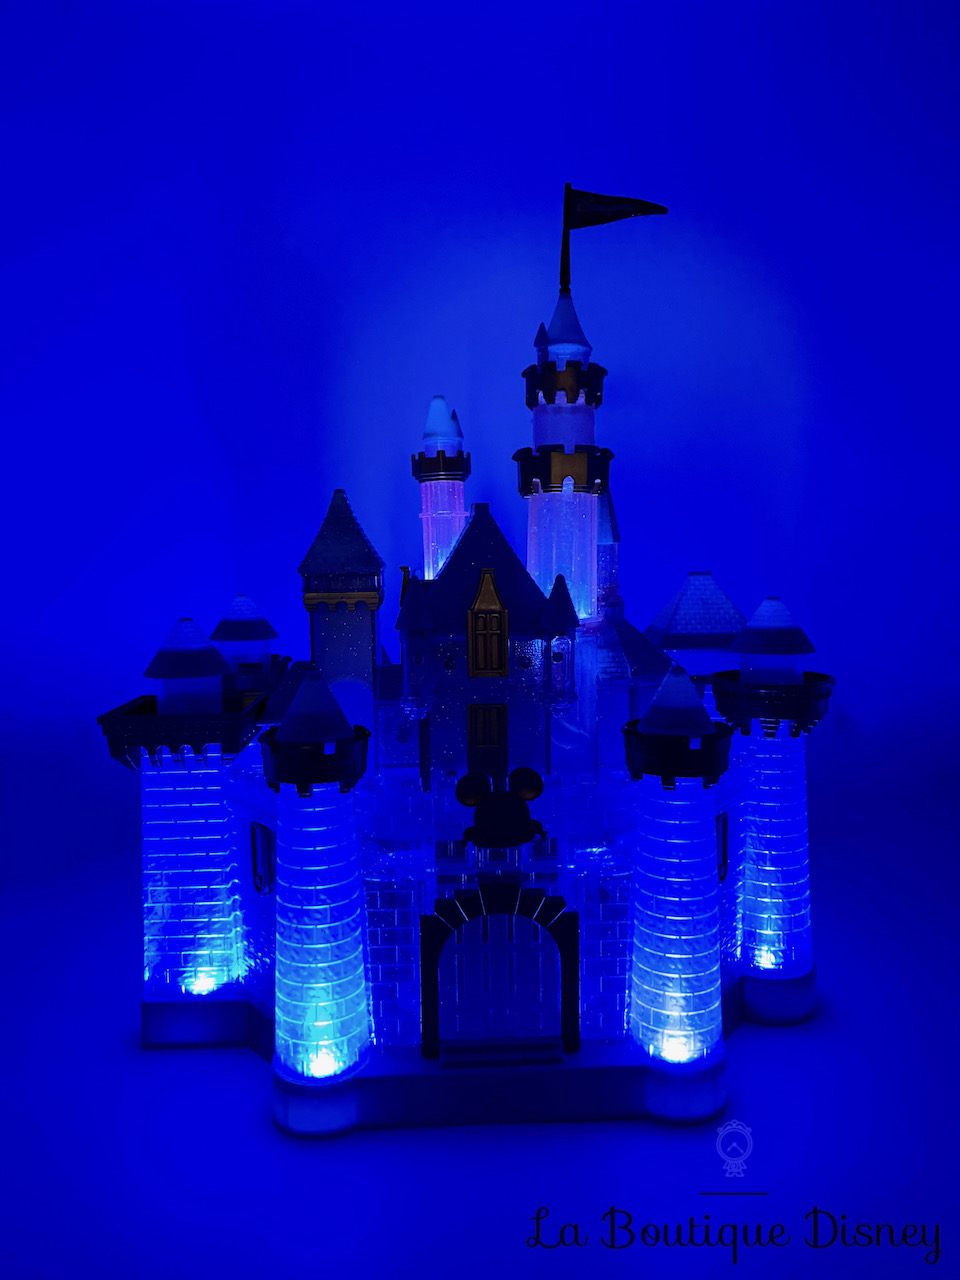 Jouet Château des Princesses Disneyland Paris 2021 Disney lumineux